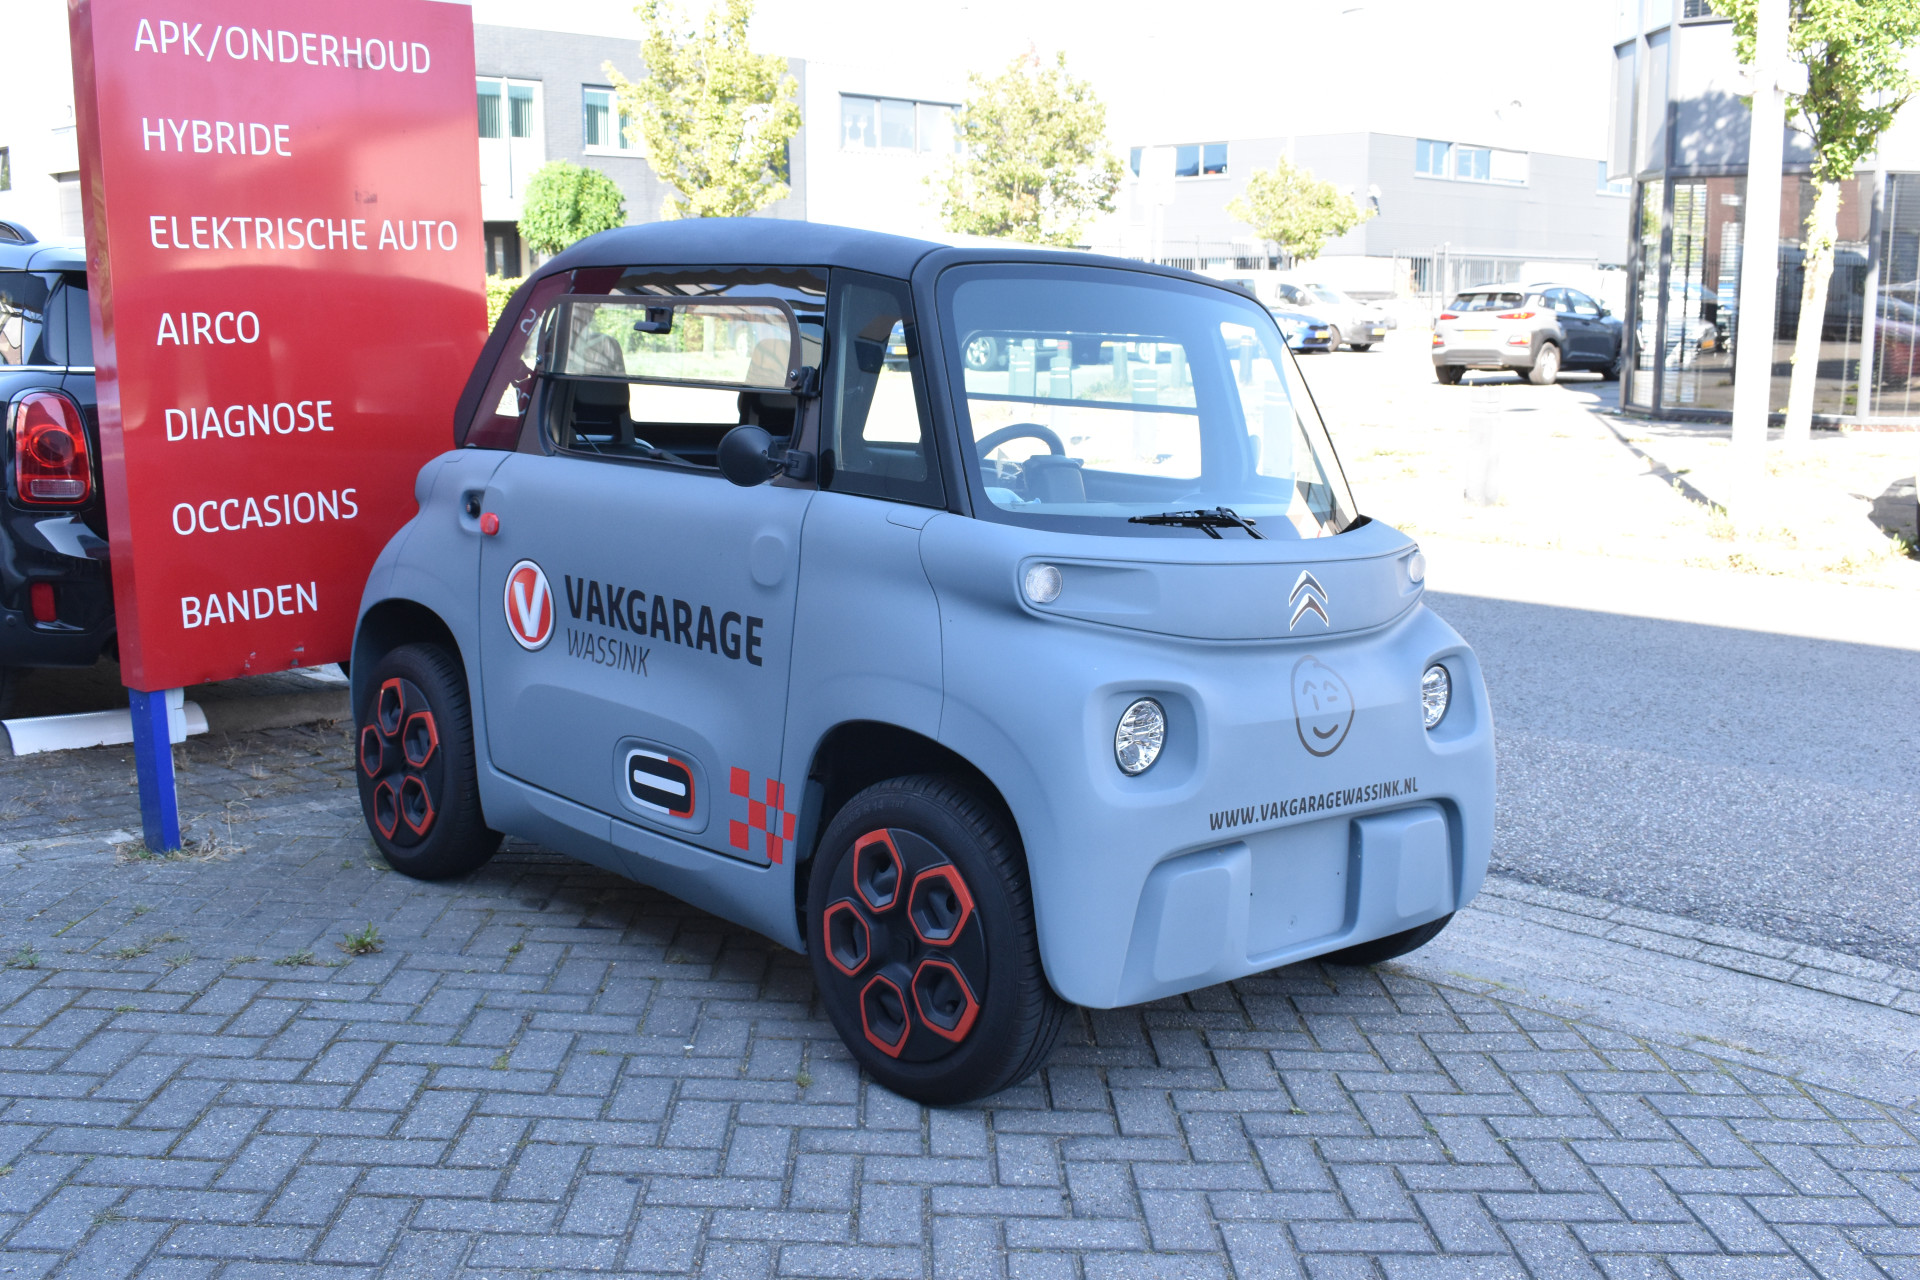 Citroën Brommobiel AMI 45 km/h 100% Elektrisch geen wegenbelasting / Automaat vanaf 16 jaar brommerrijbewijs